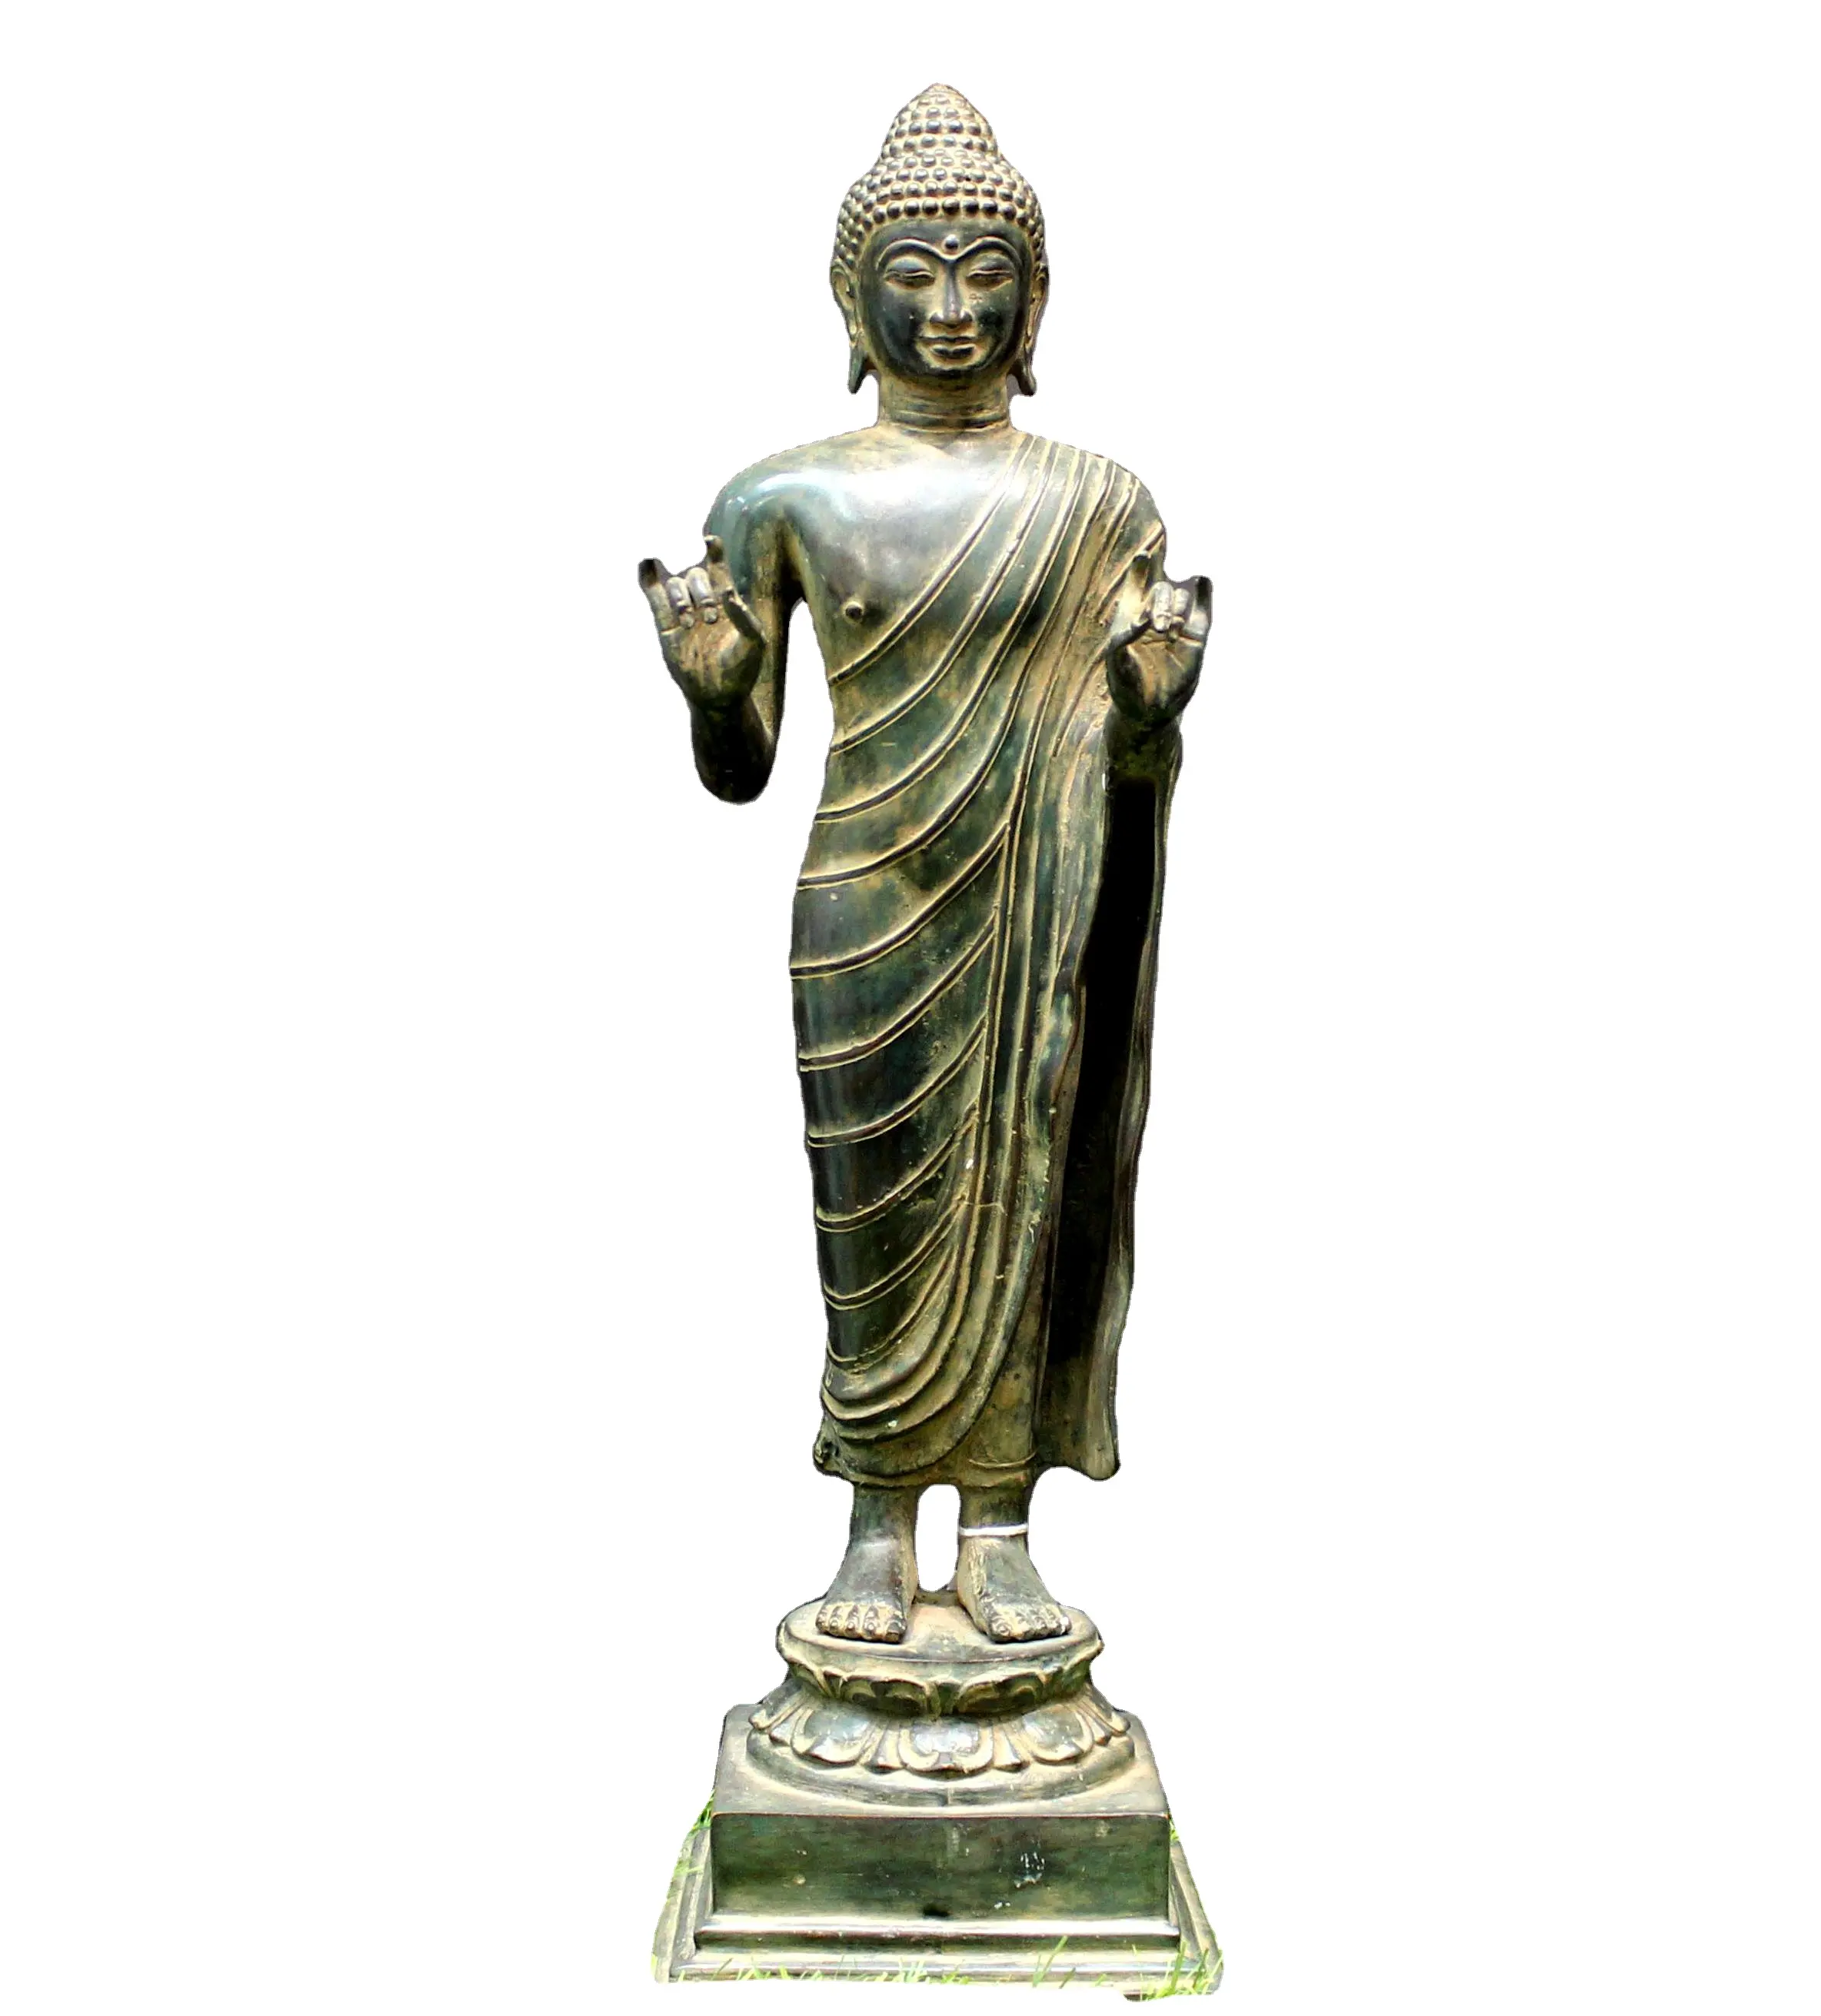 Estatua de estatua de Buda para decoración del hogar, gemas de Metal y metal de Rudra de latón antiguo, escultura religiosa de la India coleccionable, arte de budismo